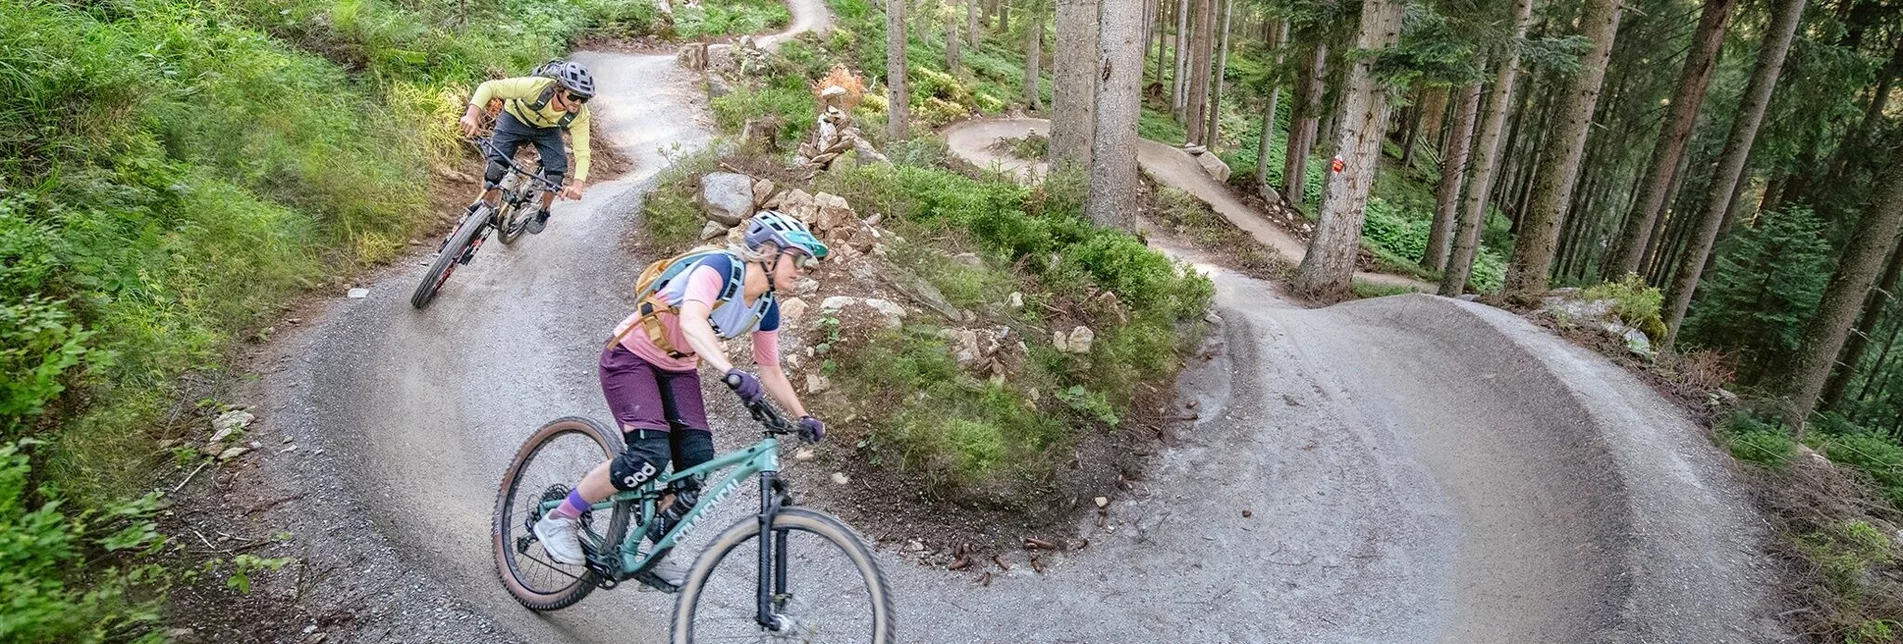 Mountain Biking Schnepfenwald Trail - Touren-Impression #1 | © Erlebnisregion Schladming-Dachstein